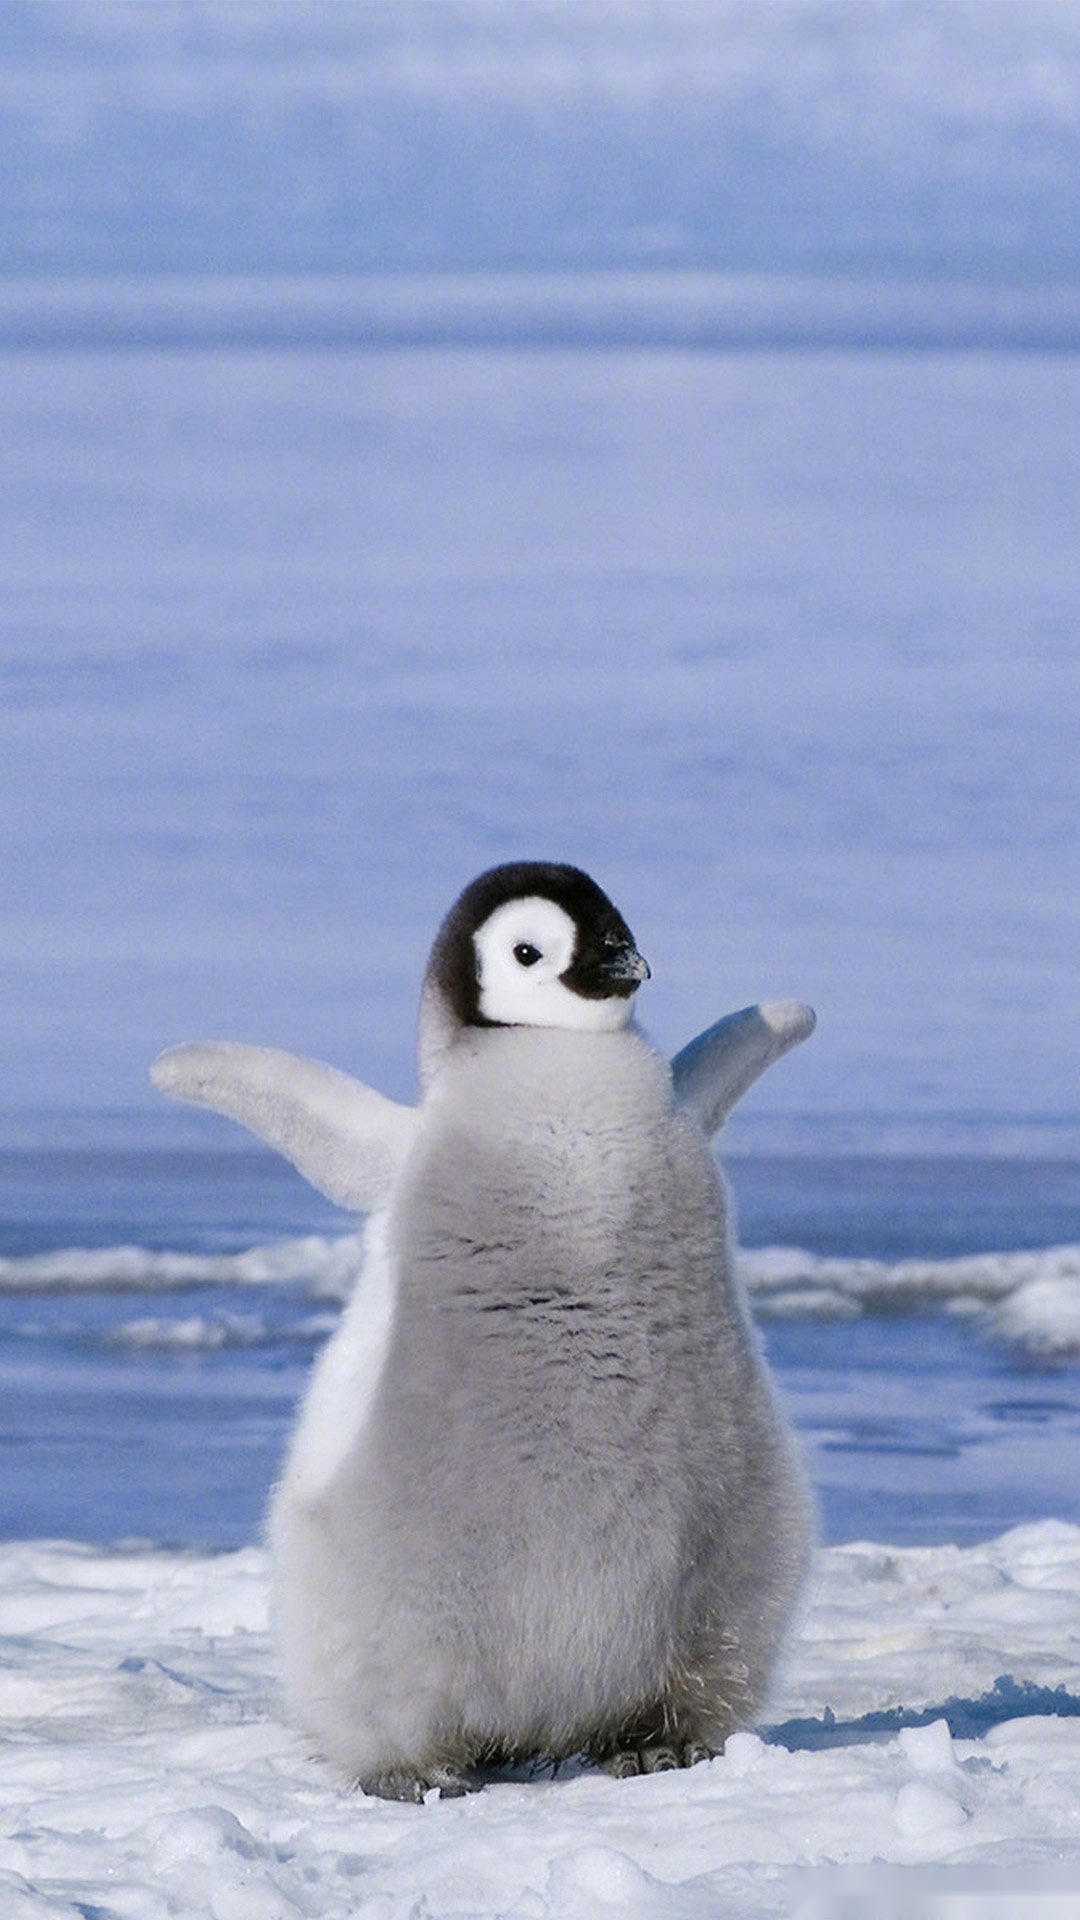 换壁纸时间到!小企鹅们也太可爱了吧,快来收藏鹅的美照